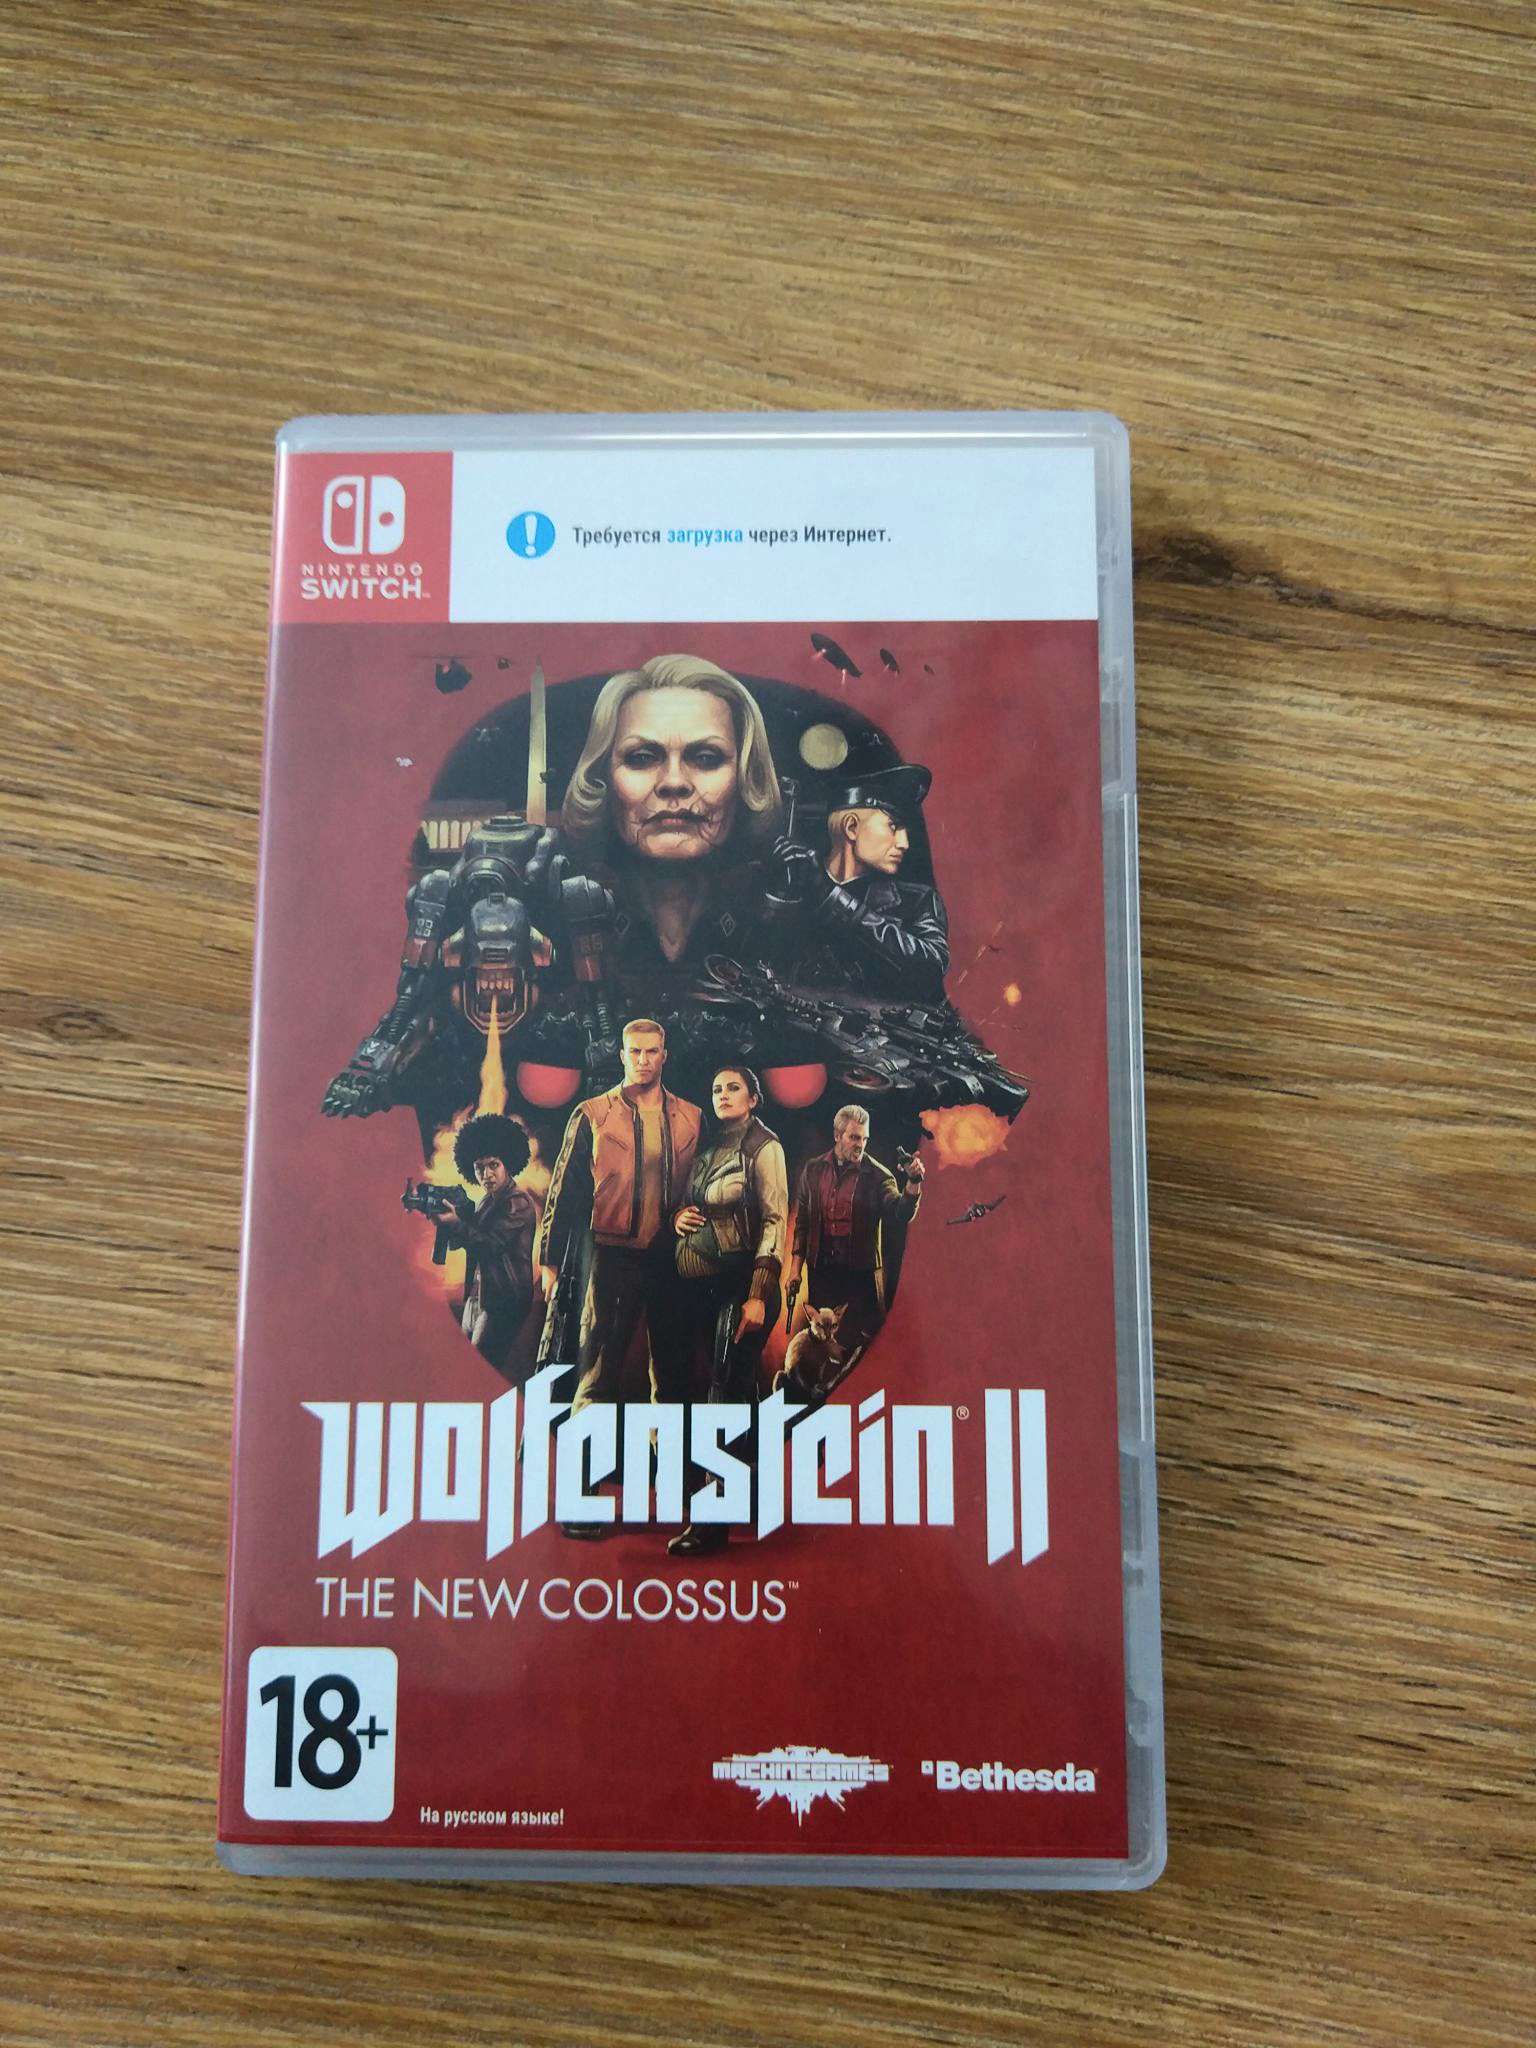 Wolfenstein nintendo switch. Wolfenstein 2 Nintendo Switch. Wolfenstein II: the New Colossus Nintendo Switch. Вольфенштайн на Нинтендо свитч. Картридж Wolfenstein Nintendo Switch.